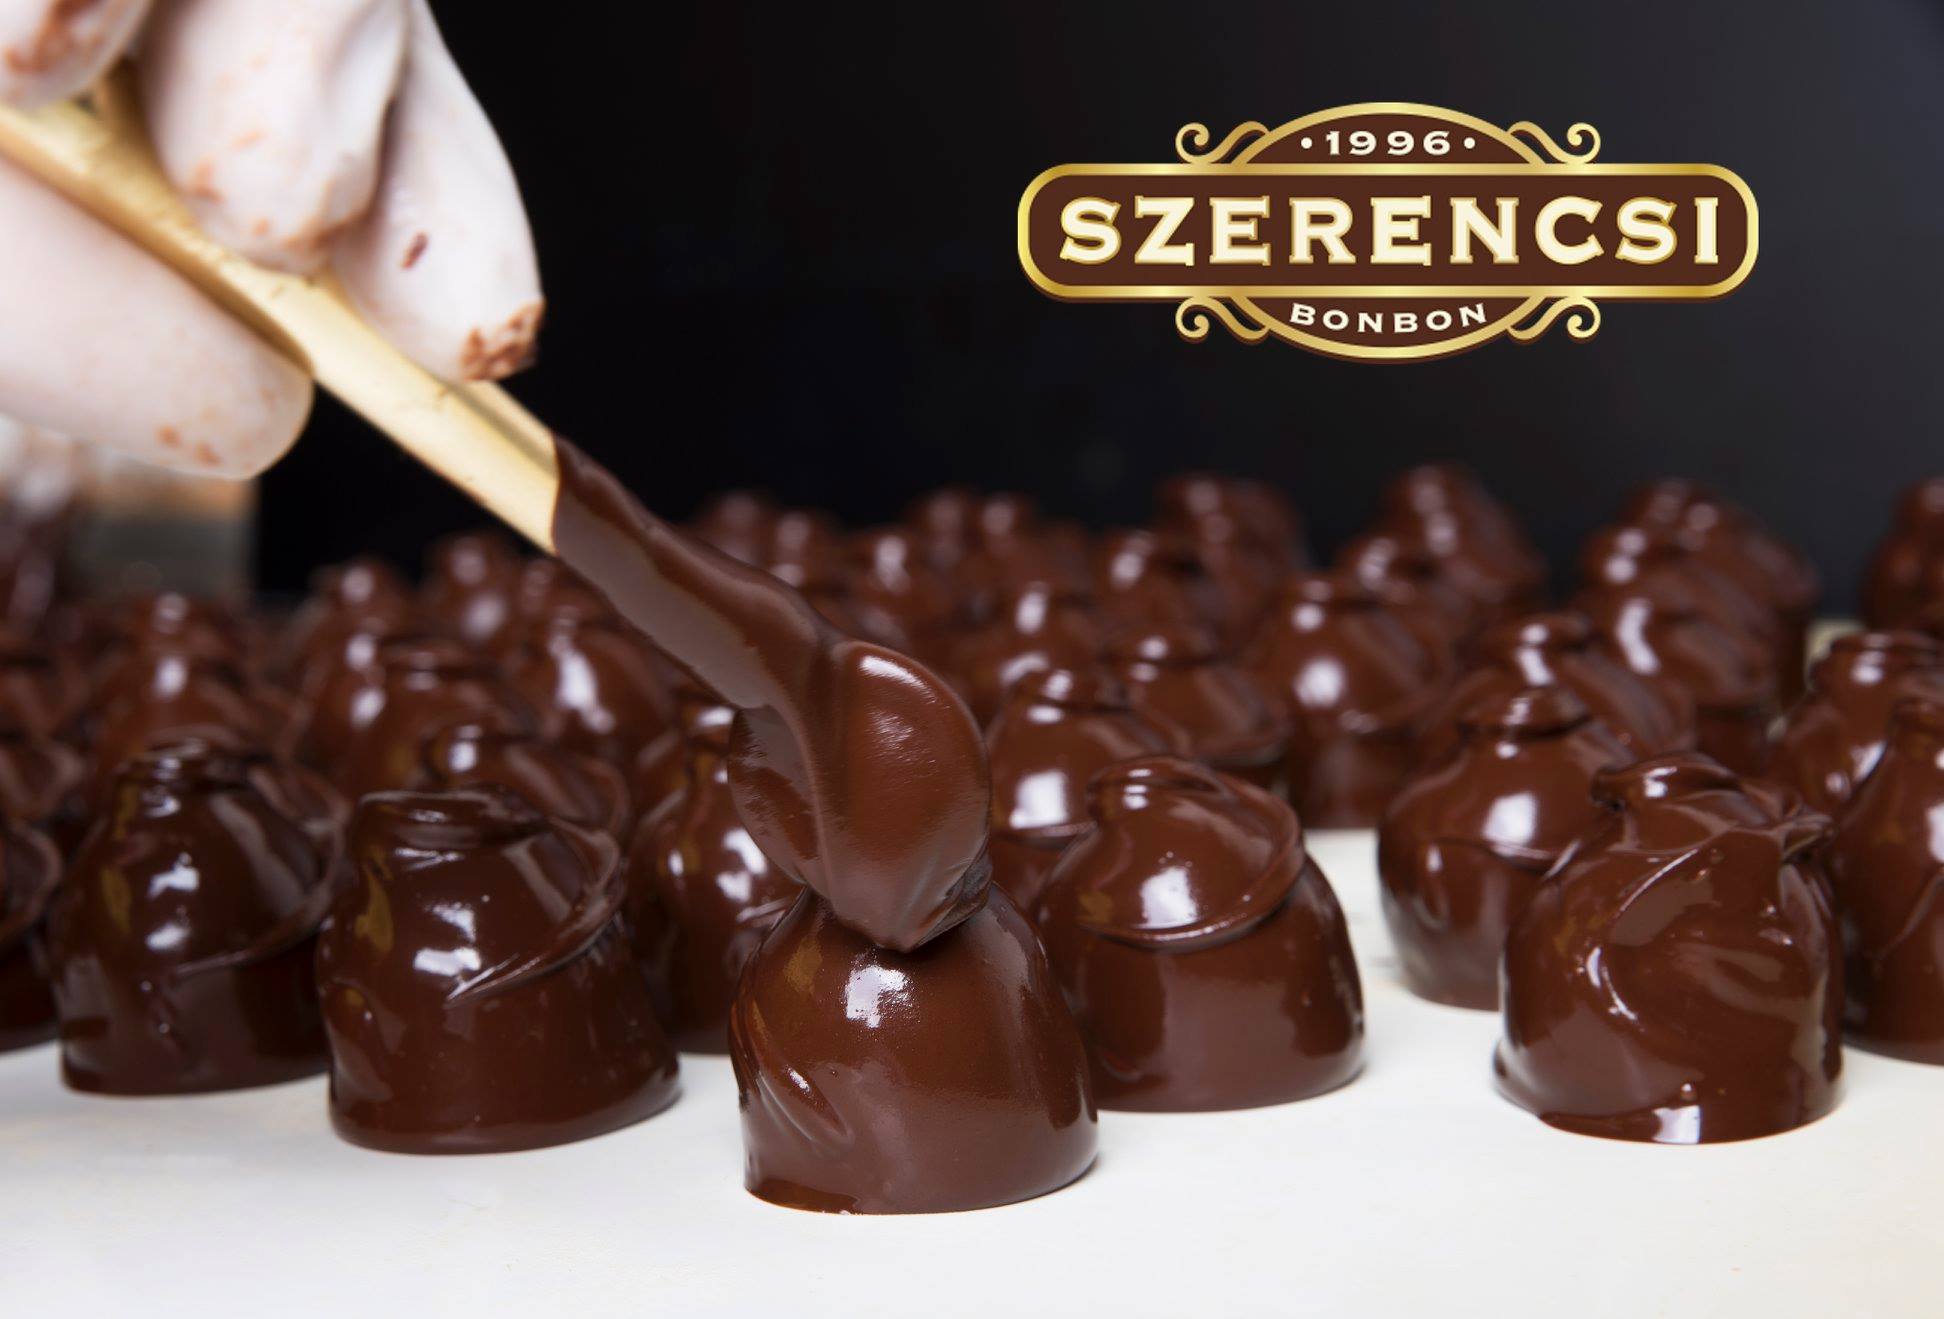 Szerencsi chocolate, Hungary